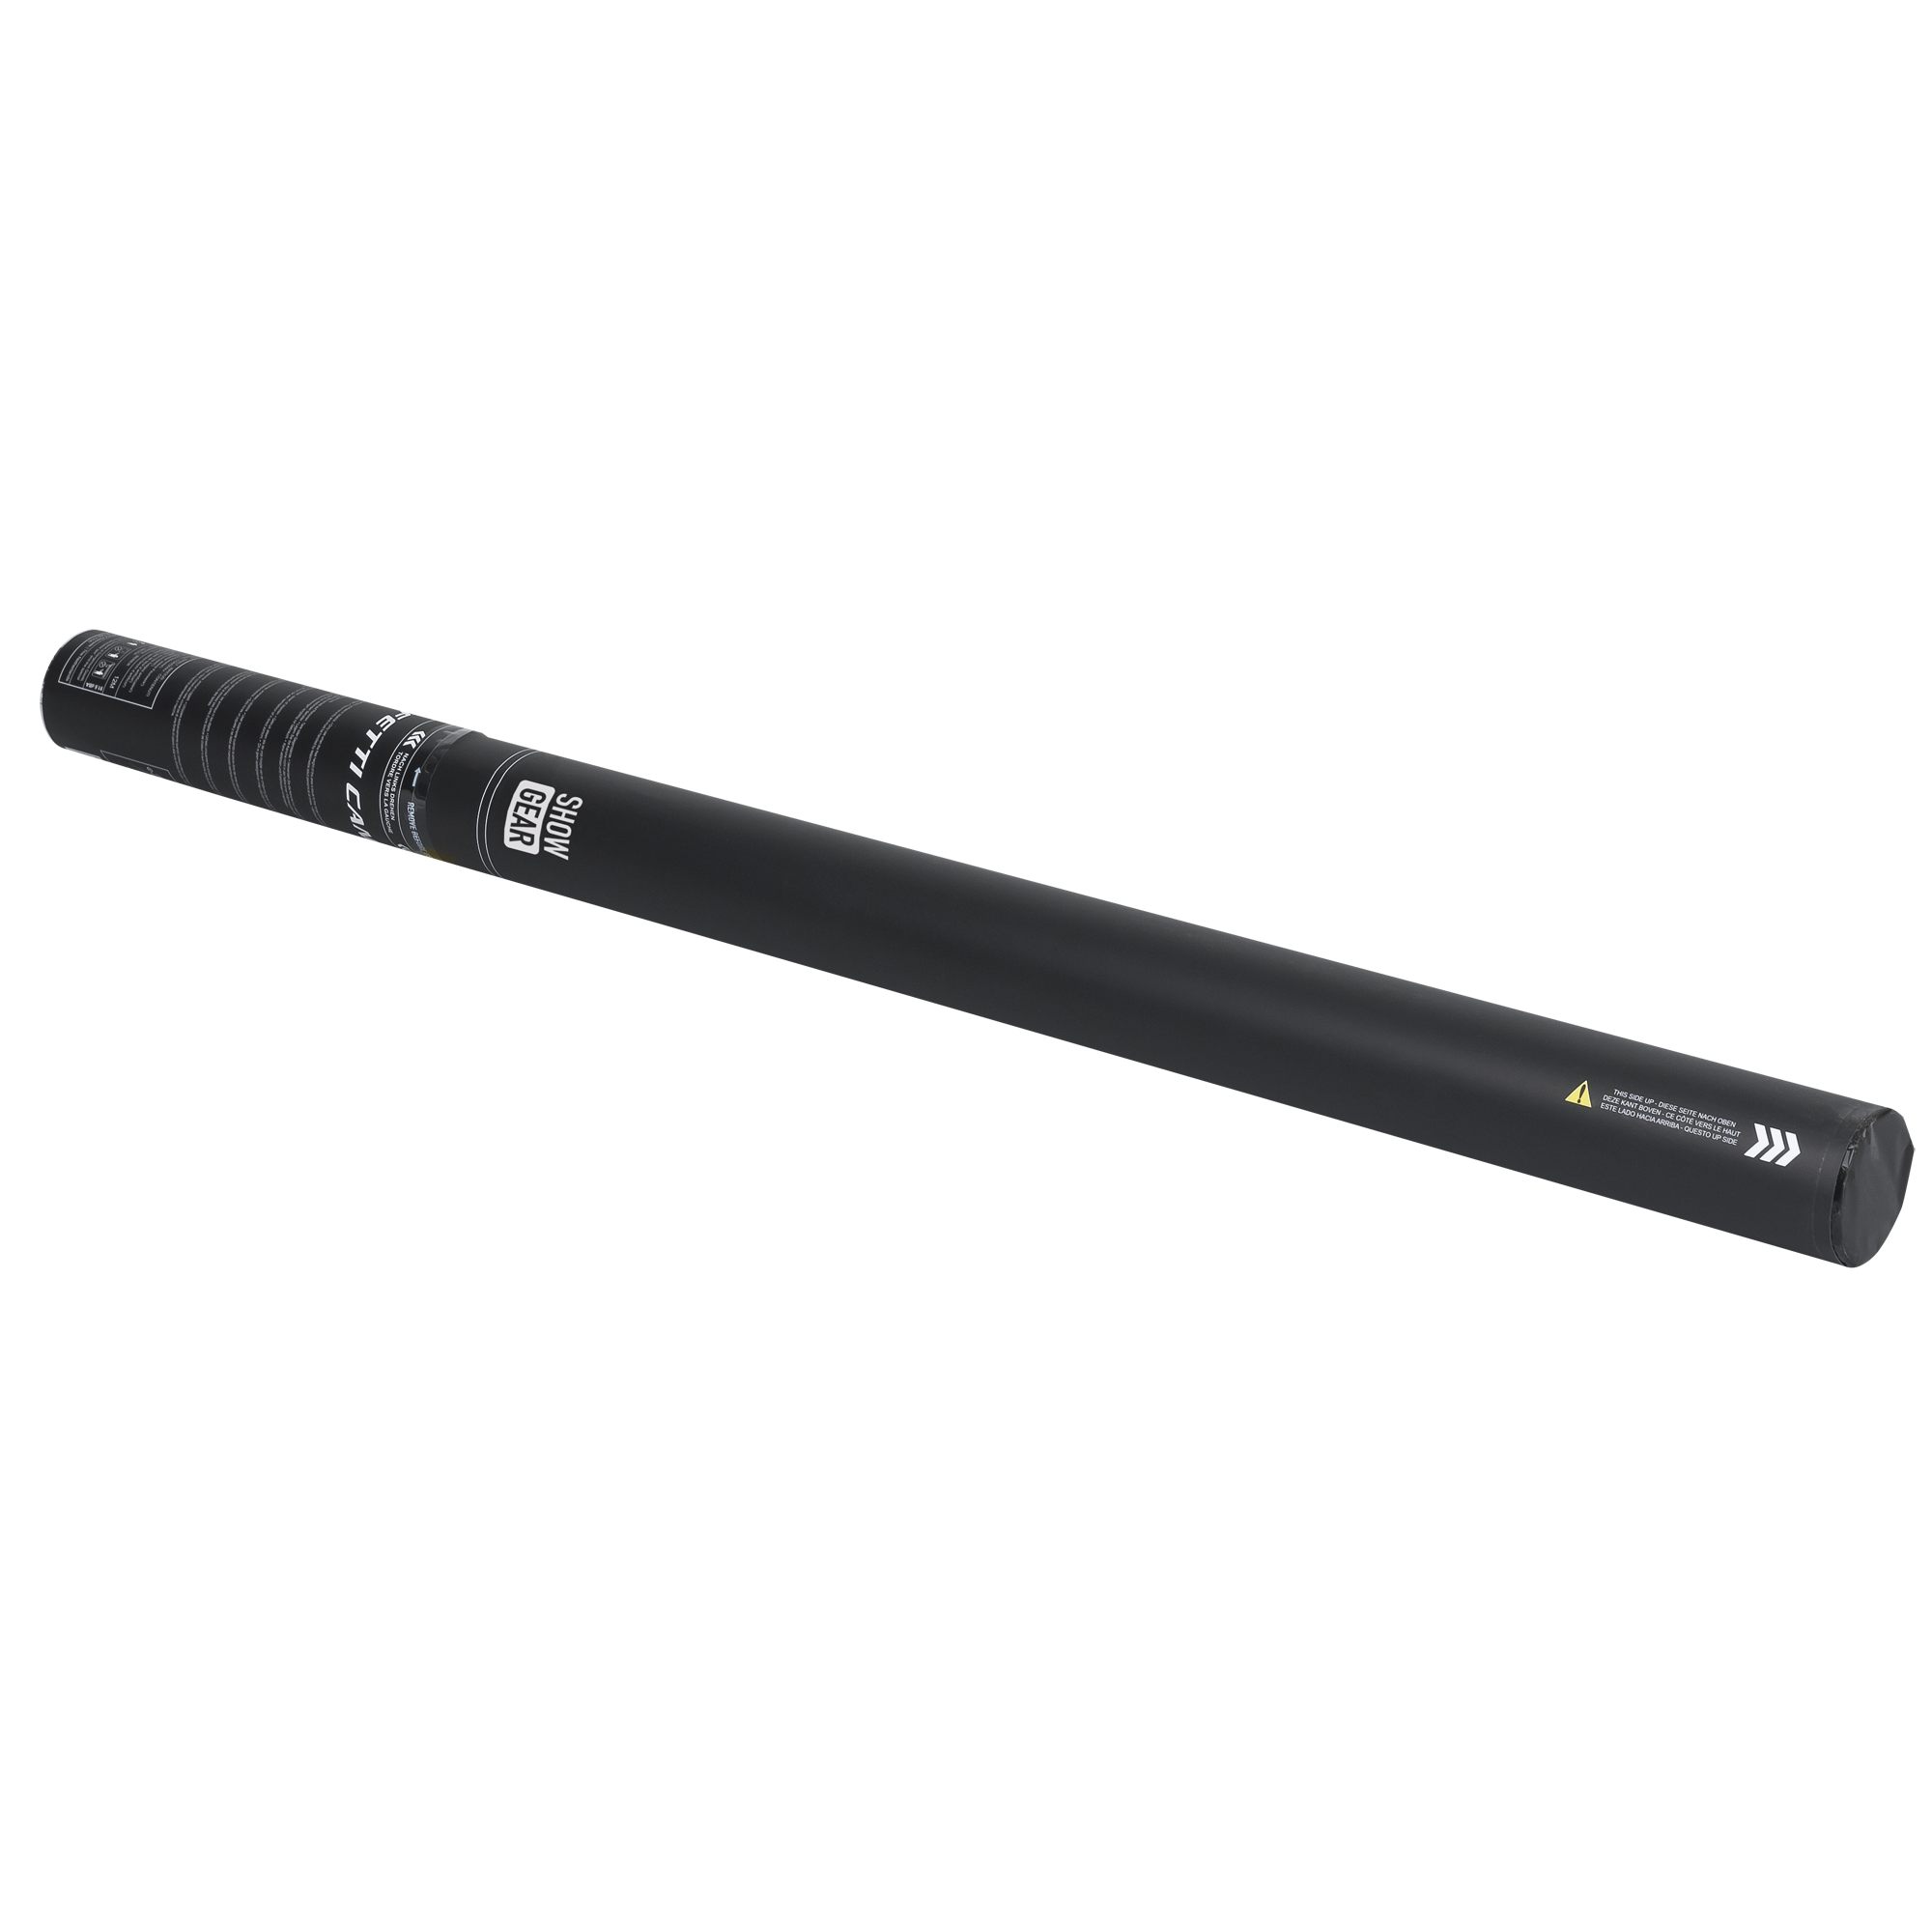 Showgear Handheld Streamer Cannon Pro 80 cm, schwarz, feuerhemmend und biologisch abbaubar